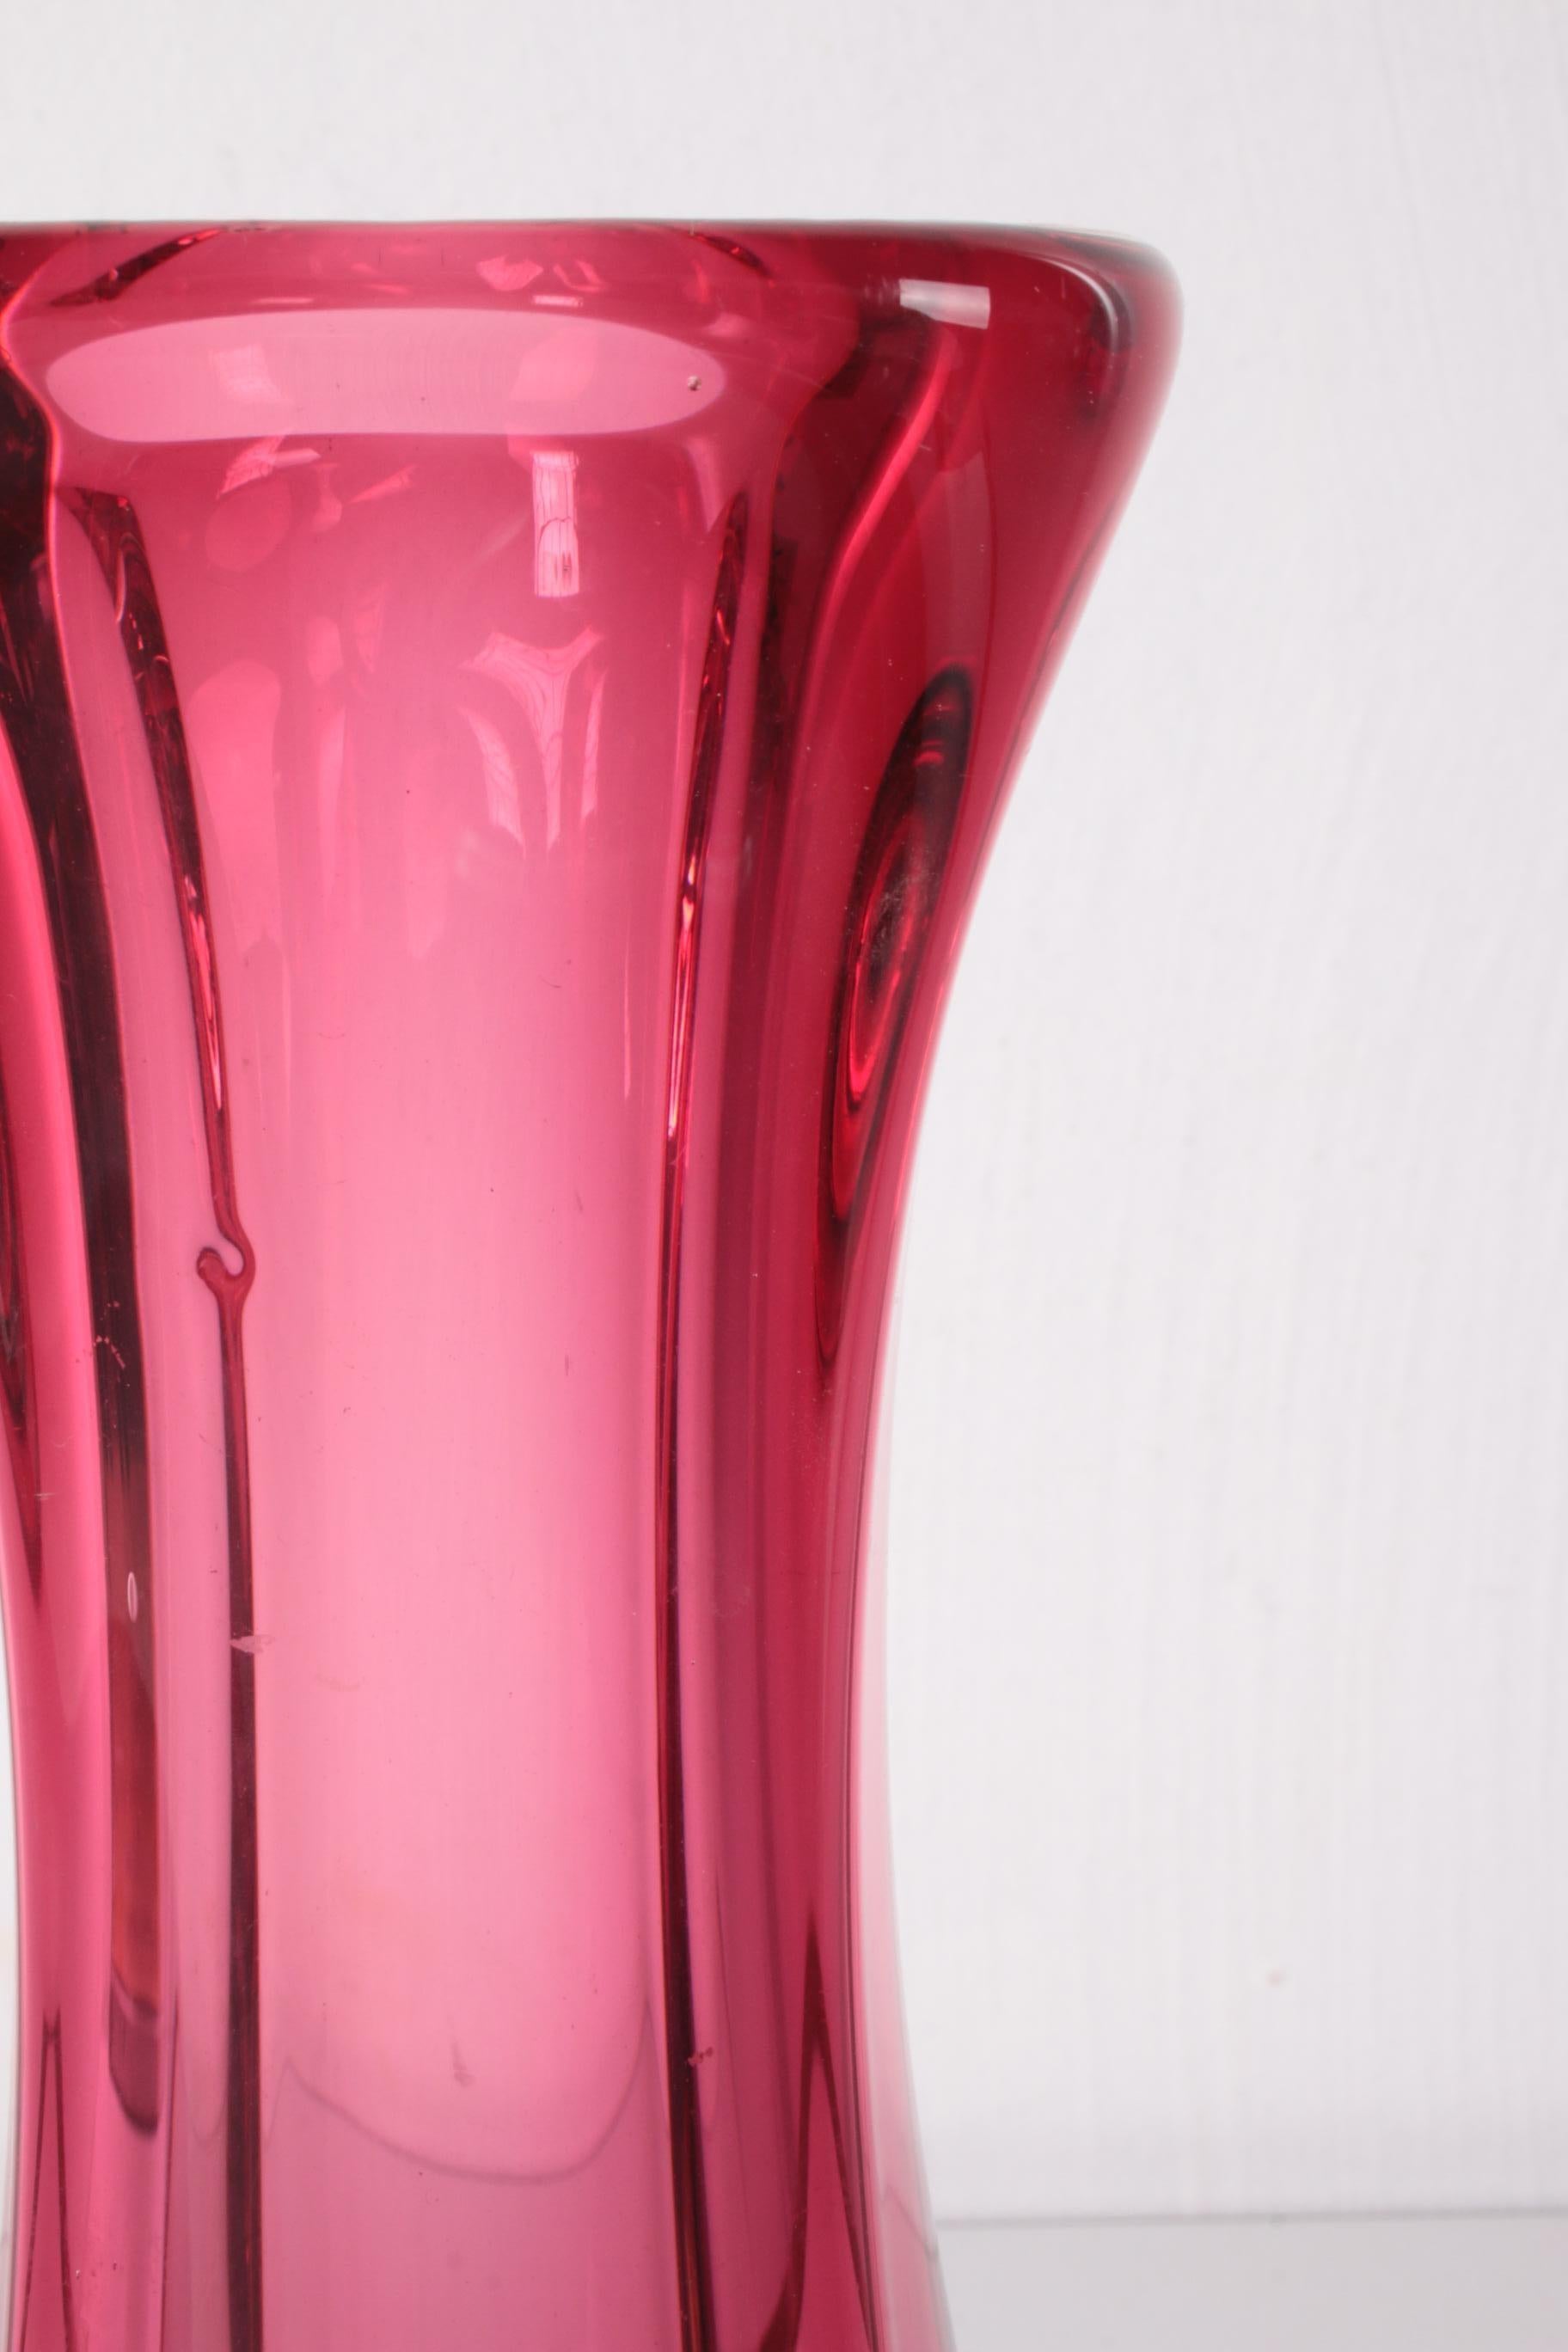 Cristal Vase carré épais vintage fabriqué dans les années 60